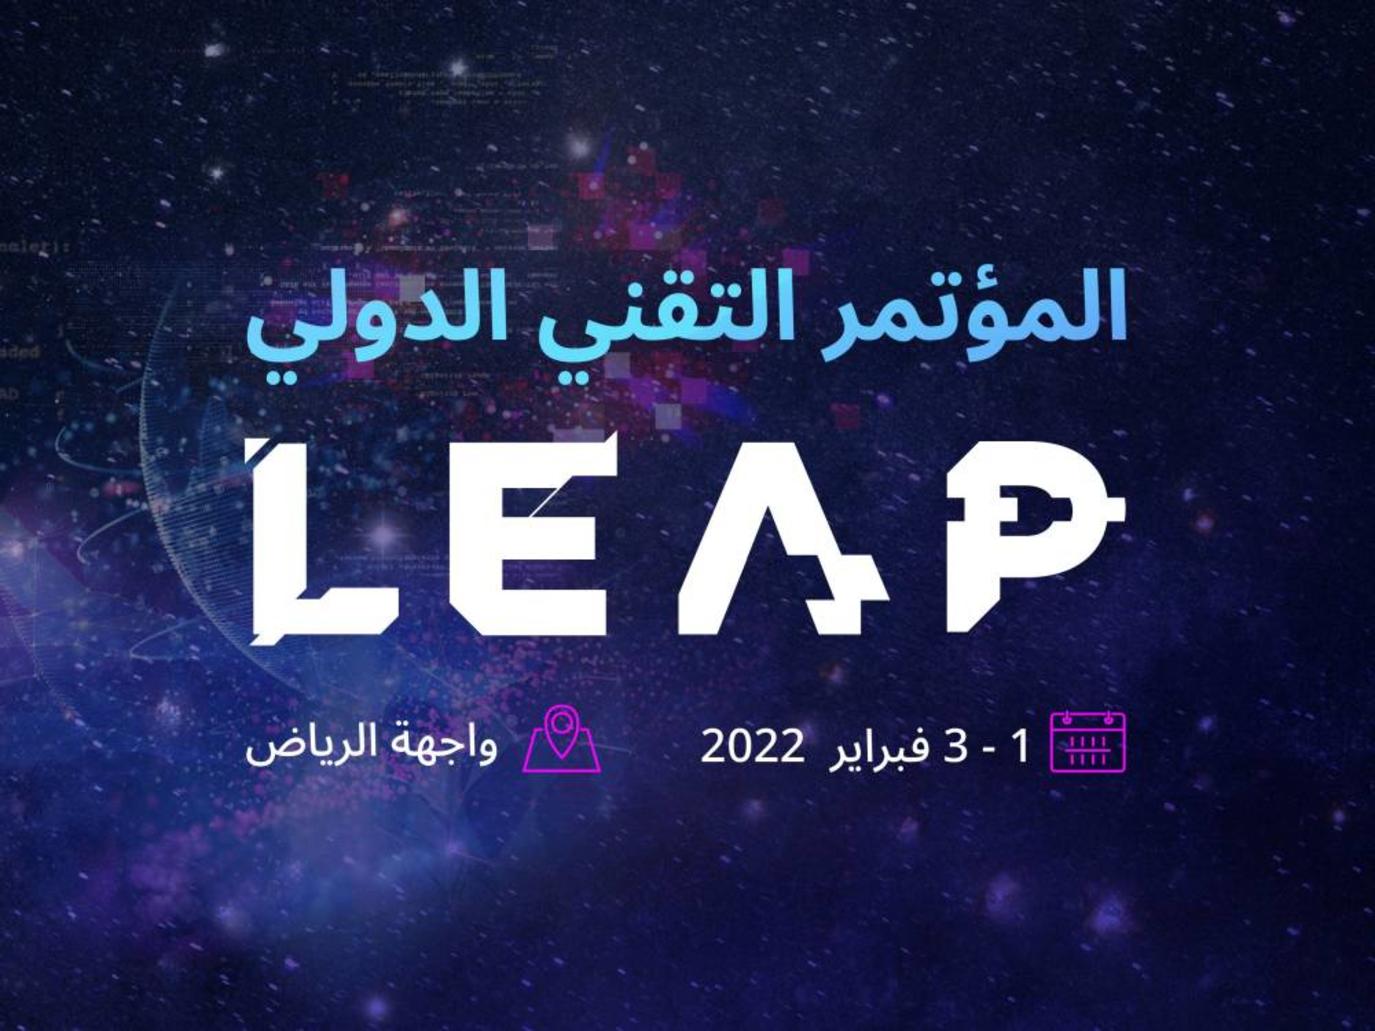 استضافة مؤتمر التكنولوجيا والذكاء الاصطناعي في الرياض الشهر المقبل